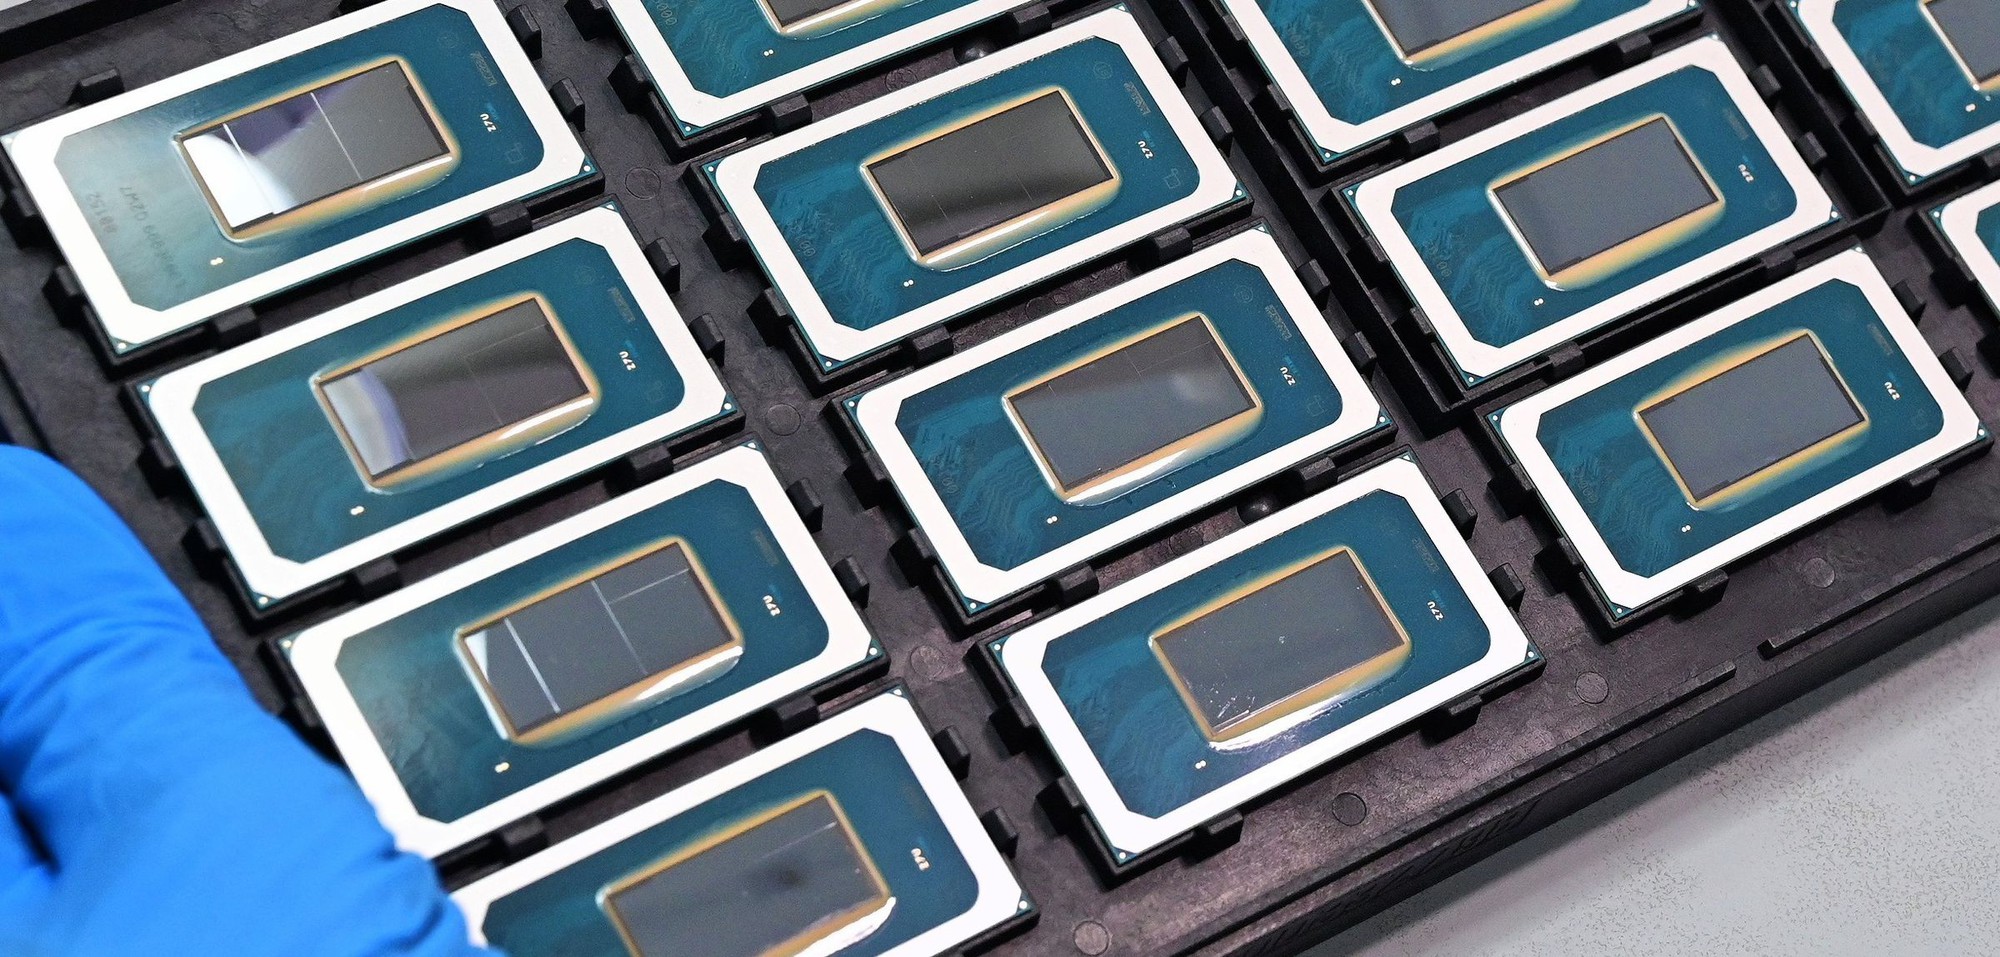 Intel chốt lịch ra mắt chip Core Ultra 'Hồ sao băng' mới nhất, riêng người dùng PC vẫn sẽ phải dùng lại chip đời cũ - Ảnh 2.